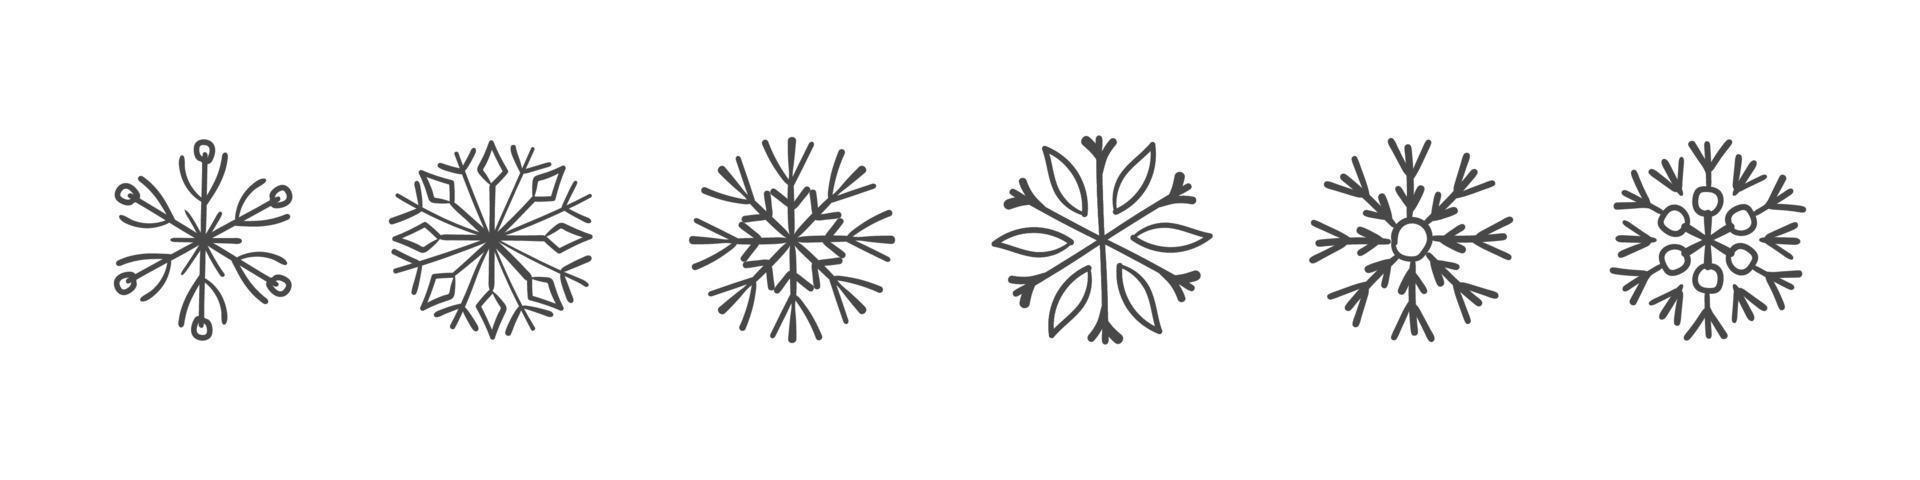 Schneeflocken Zeichen. Reihe von handgezeichneten Schneeflocken. gestaltungselemente für weihnachten und neujahr. Vektorgrafiken vektor